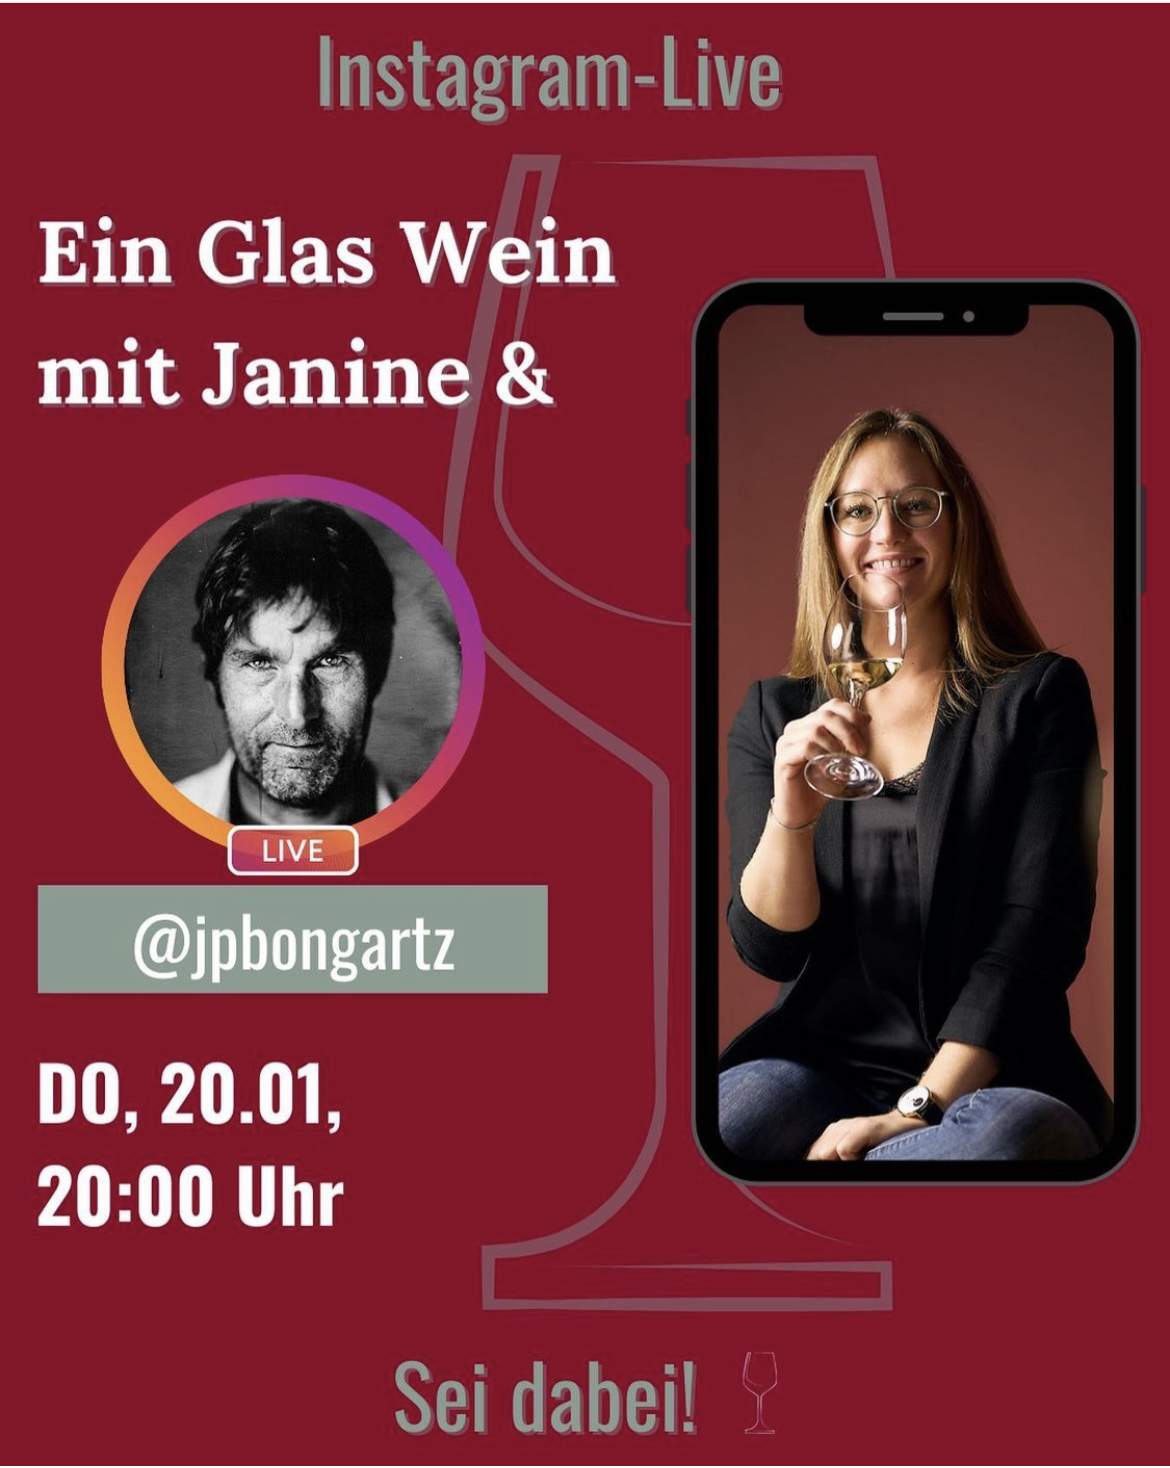 Der Fotograf Joerg Bongartz und die Socialmedia-Beraterin Janine Heck sprechen bei einem Glas Wein über ihren Beruf.